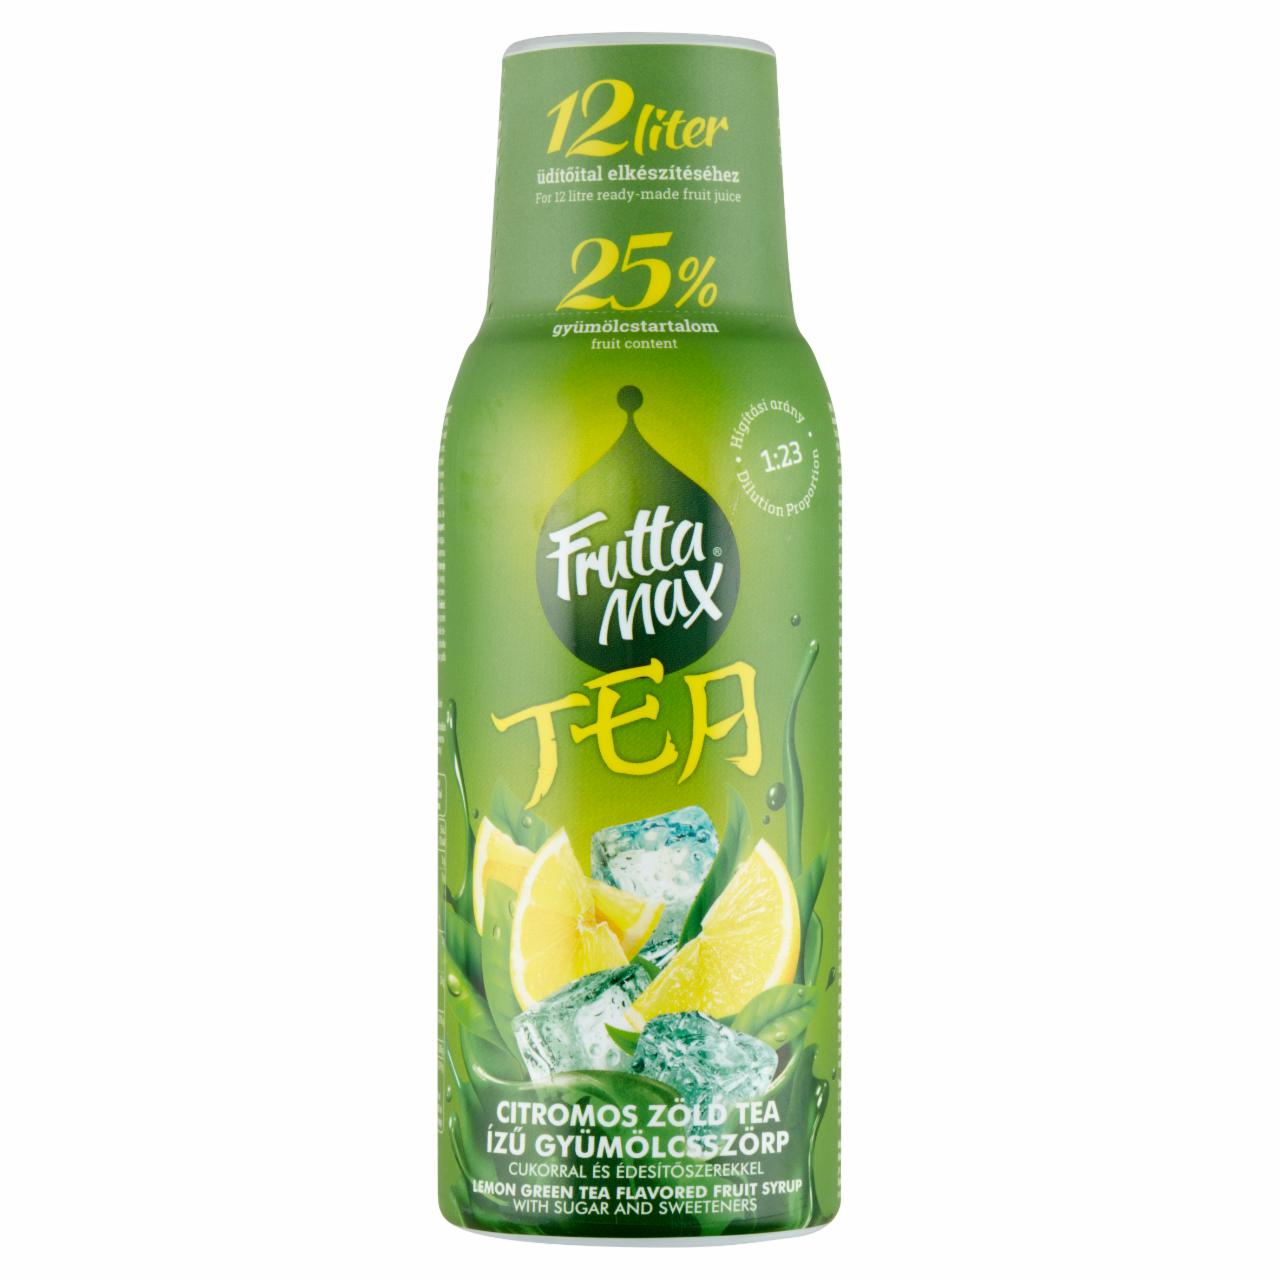 Képek - FruttaMax Tea citromos zöld tea ízű gyümölcsszörp cukorral és édesítőszerekkel 500 ml